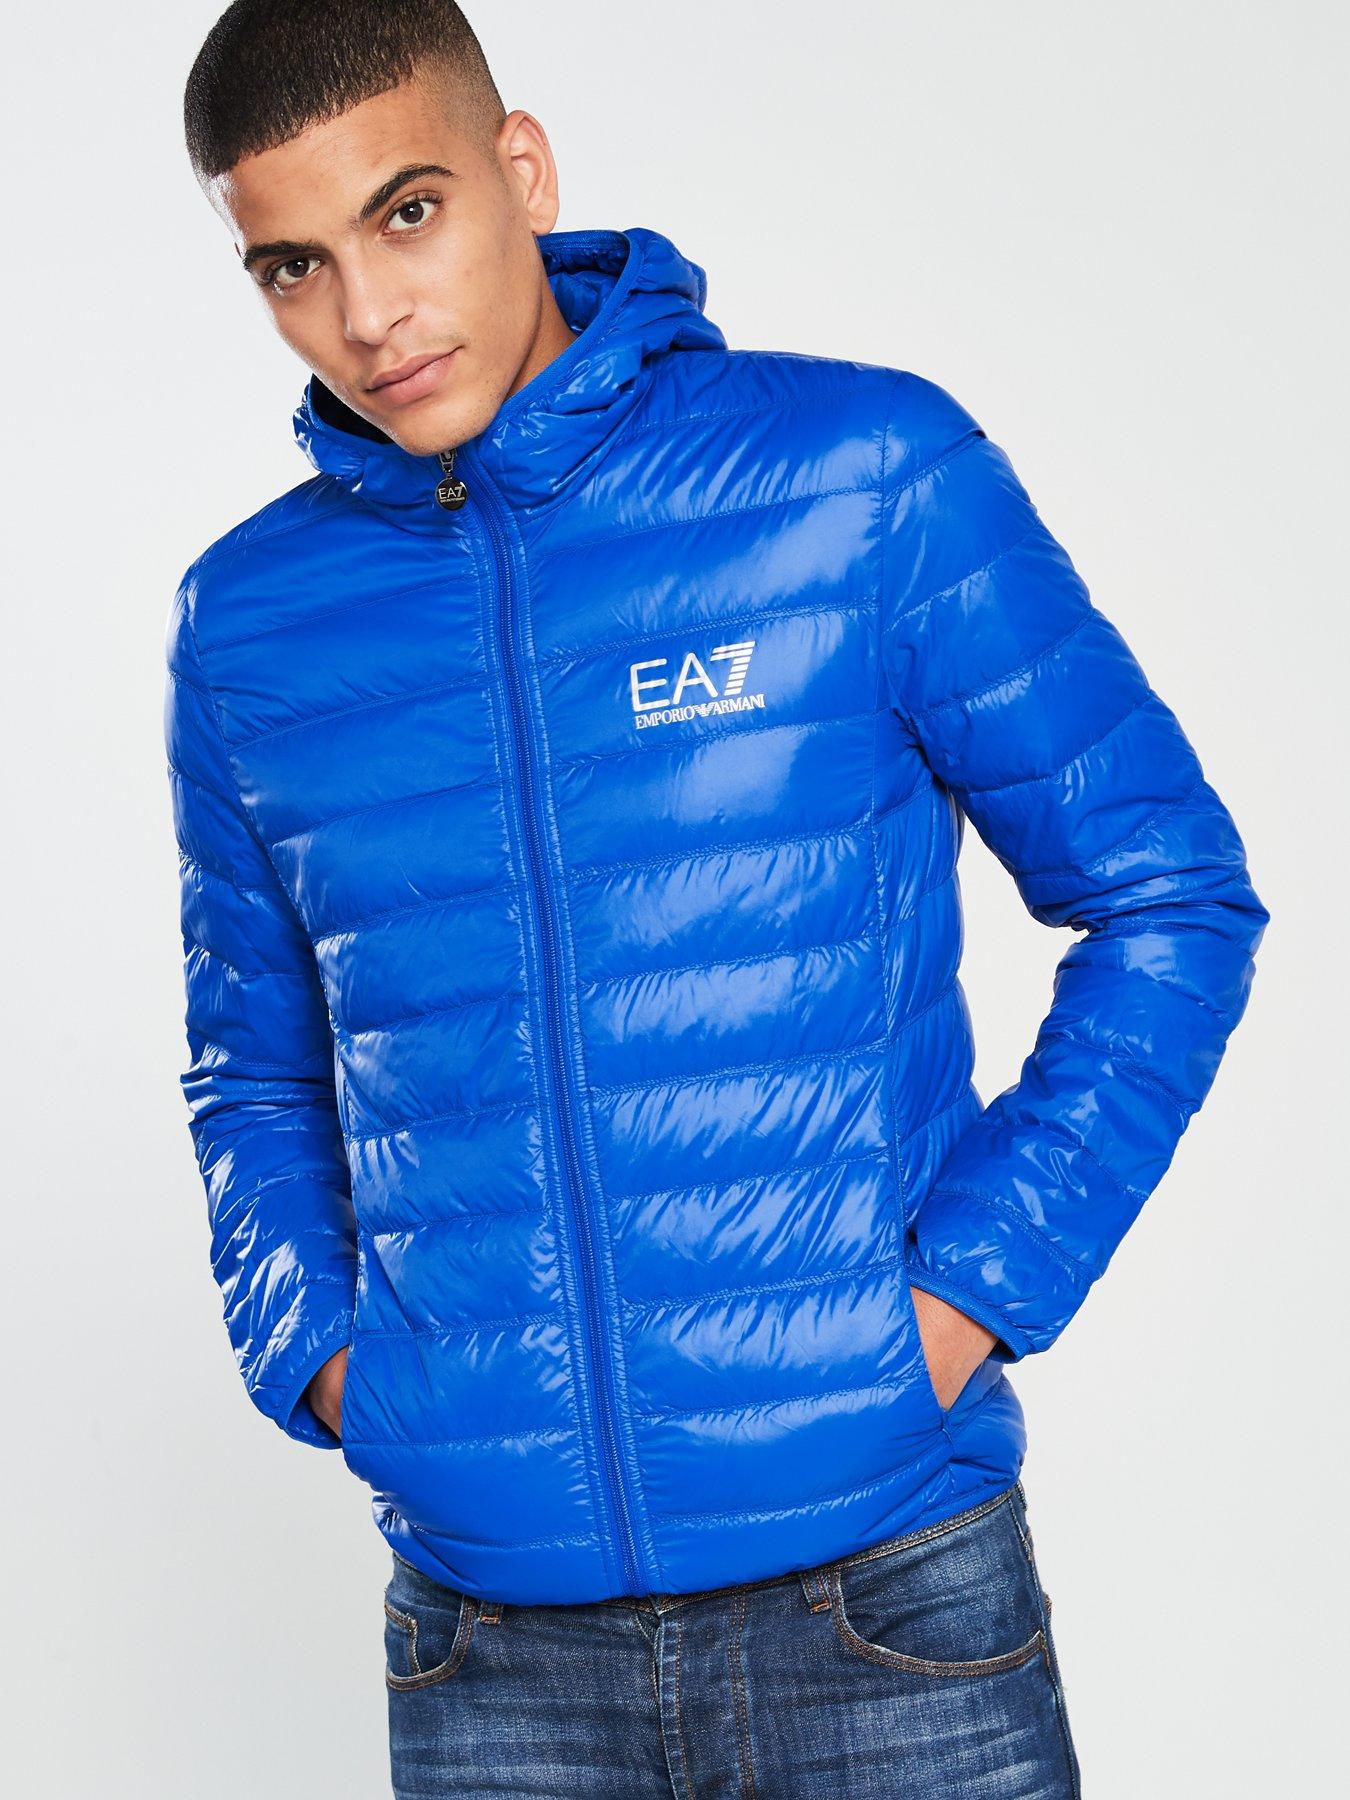 blue ea7 jacket